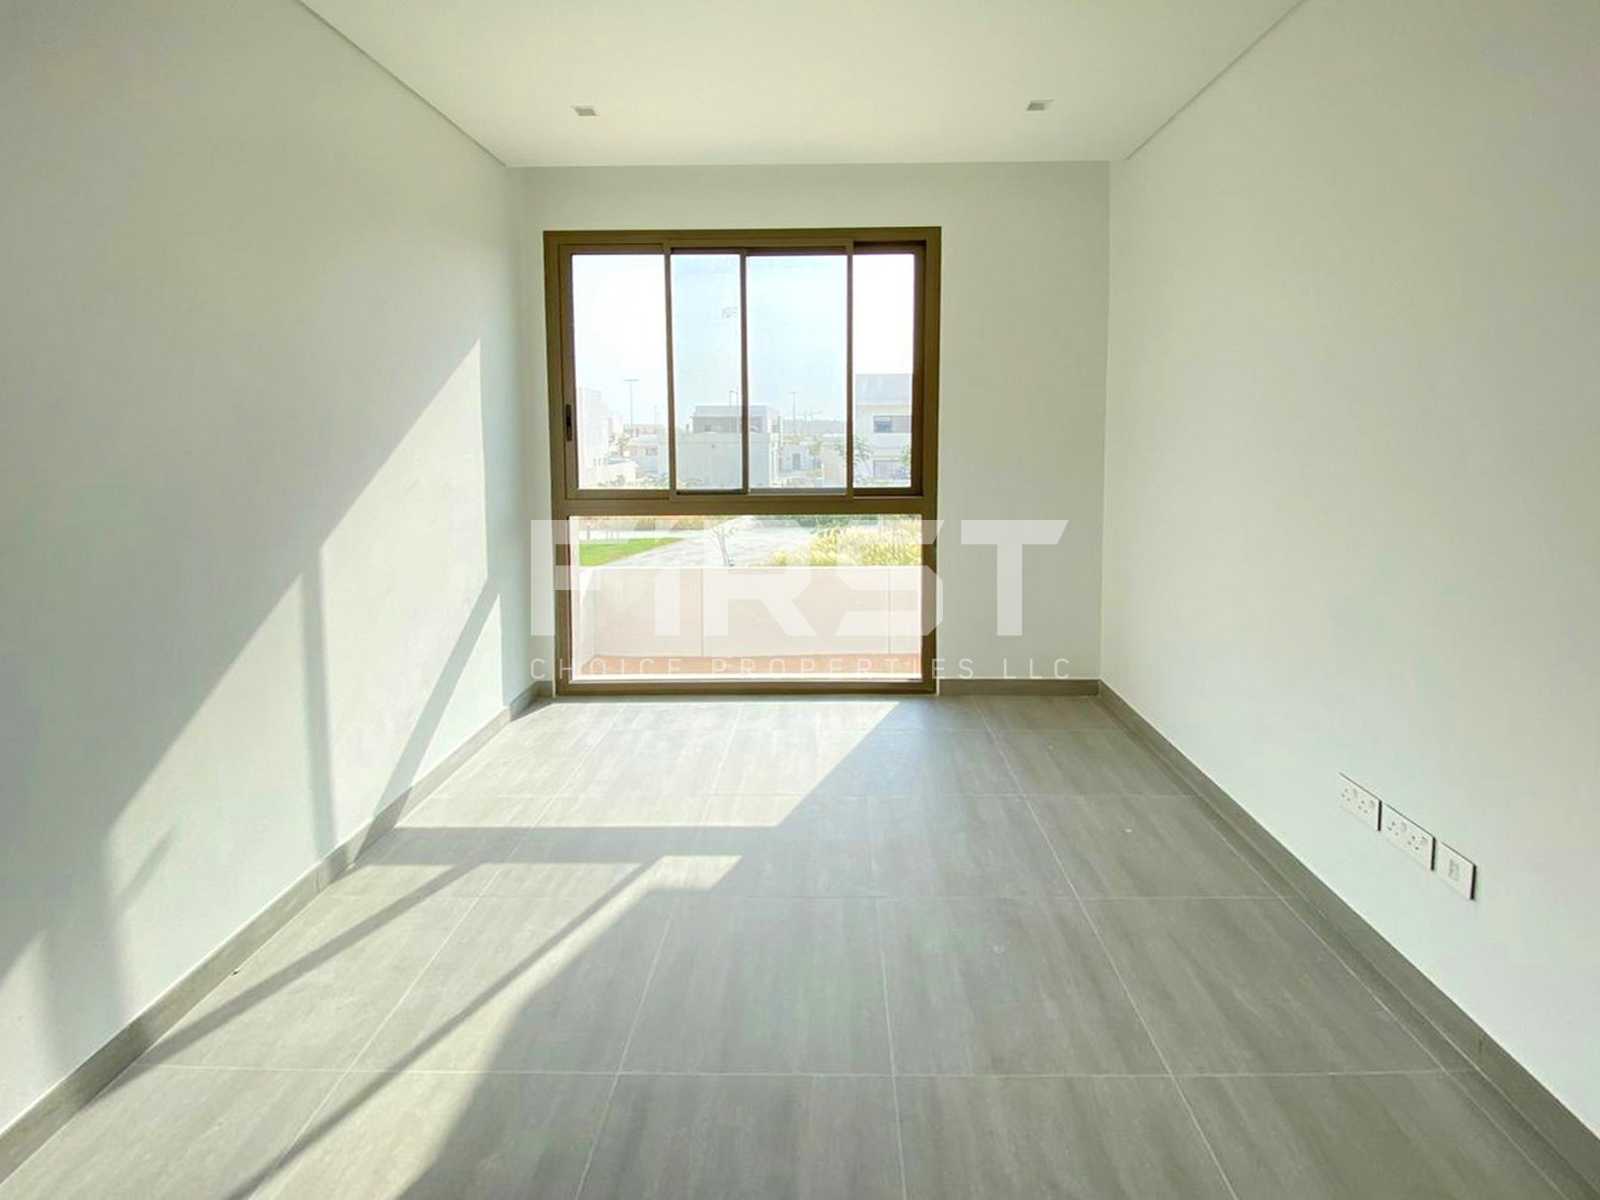 External Photo of 4 Bedroom Duplex Type 4Y in Yas Acres Yas Island AUH UAE (9).jpg